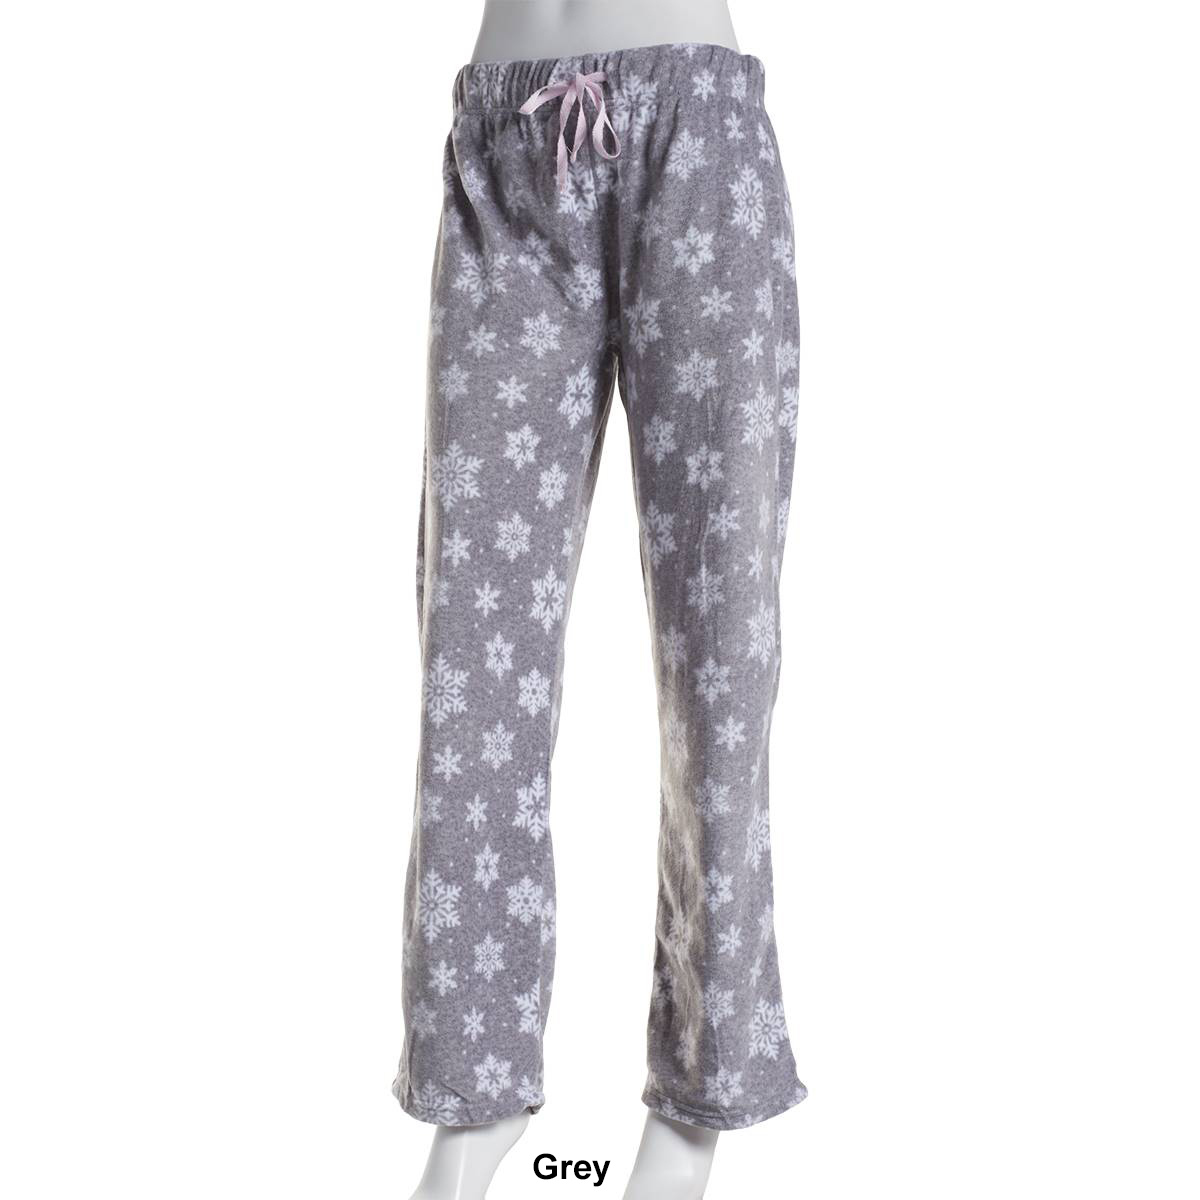 Womens Charmour Cozy Snowflake Micro Polar Pajama Pants